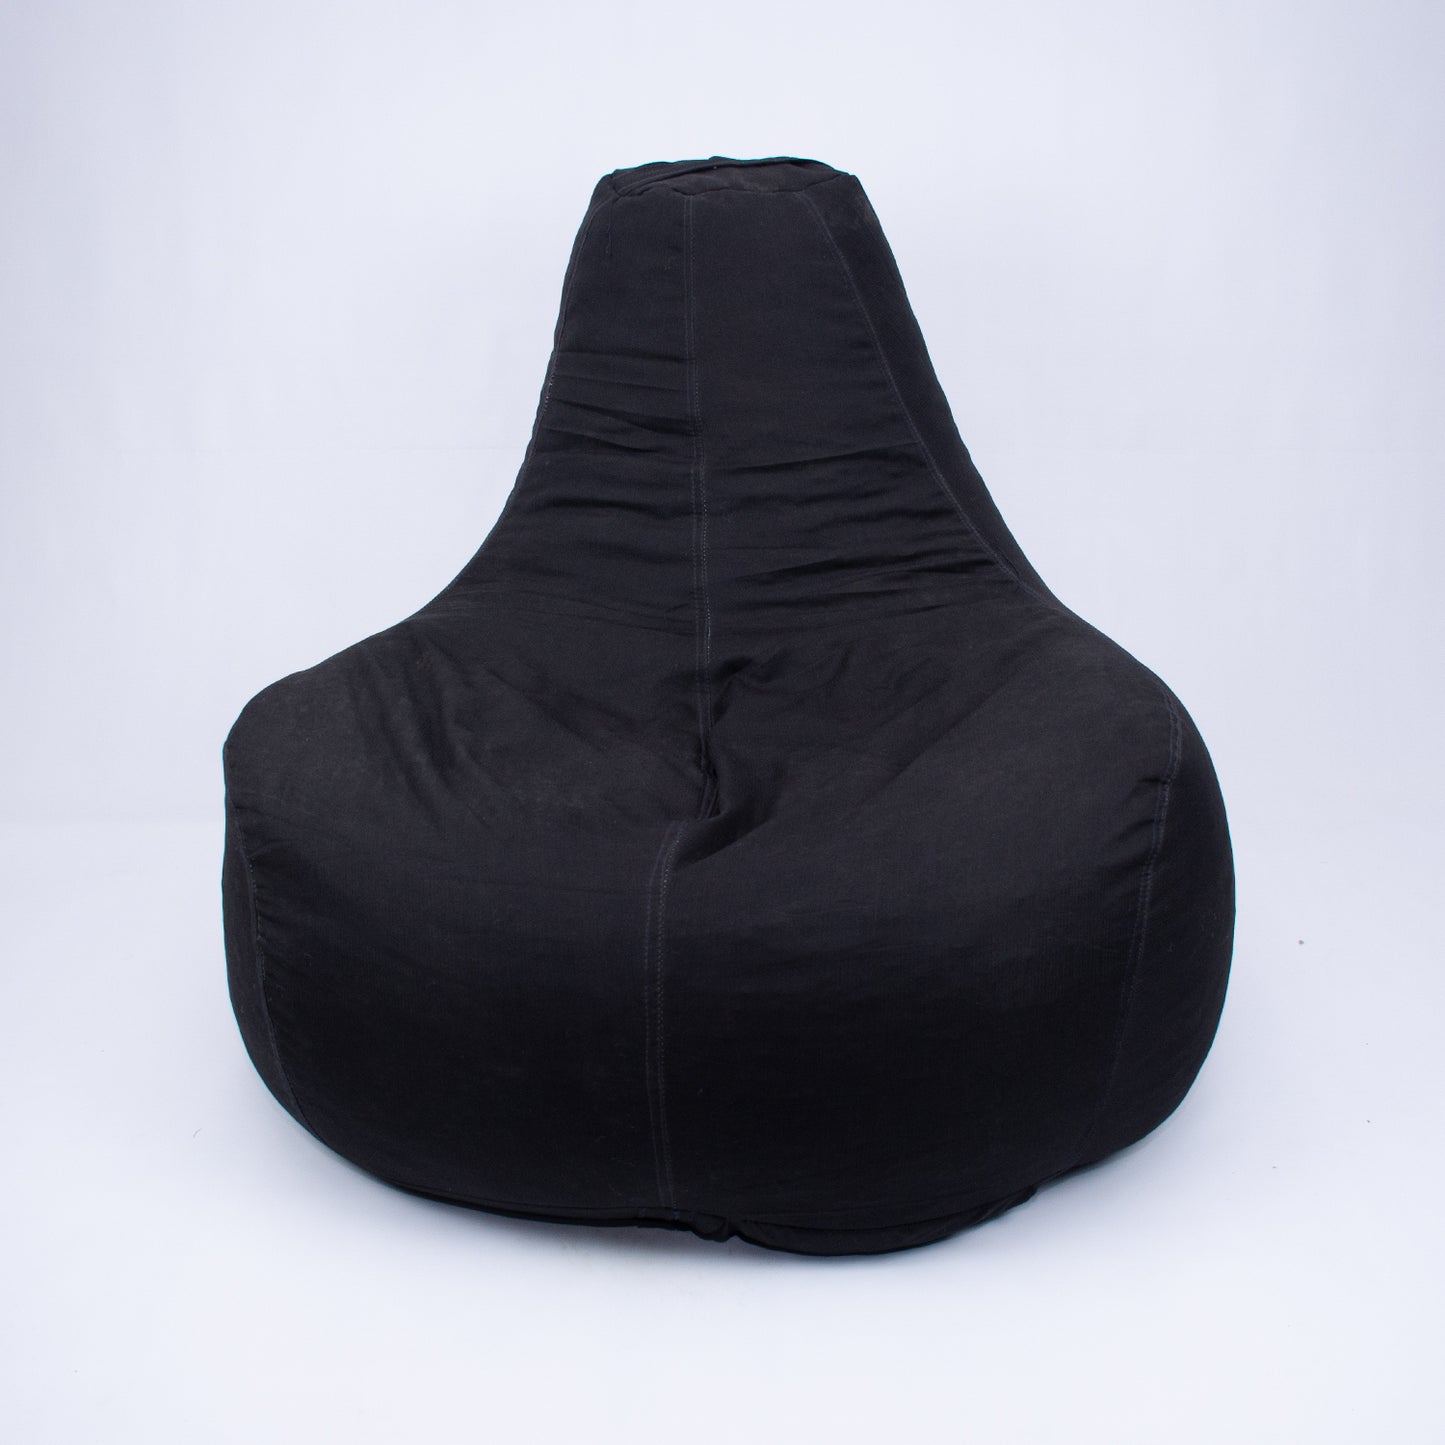 SIMPLE BLACK CHAIR - Bean Bags - BBG015